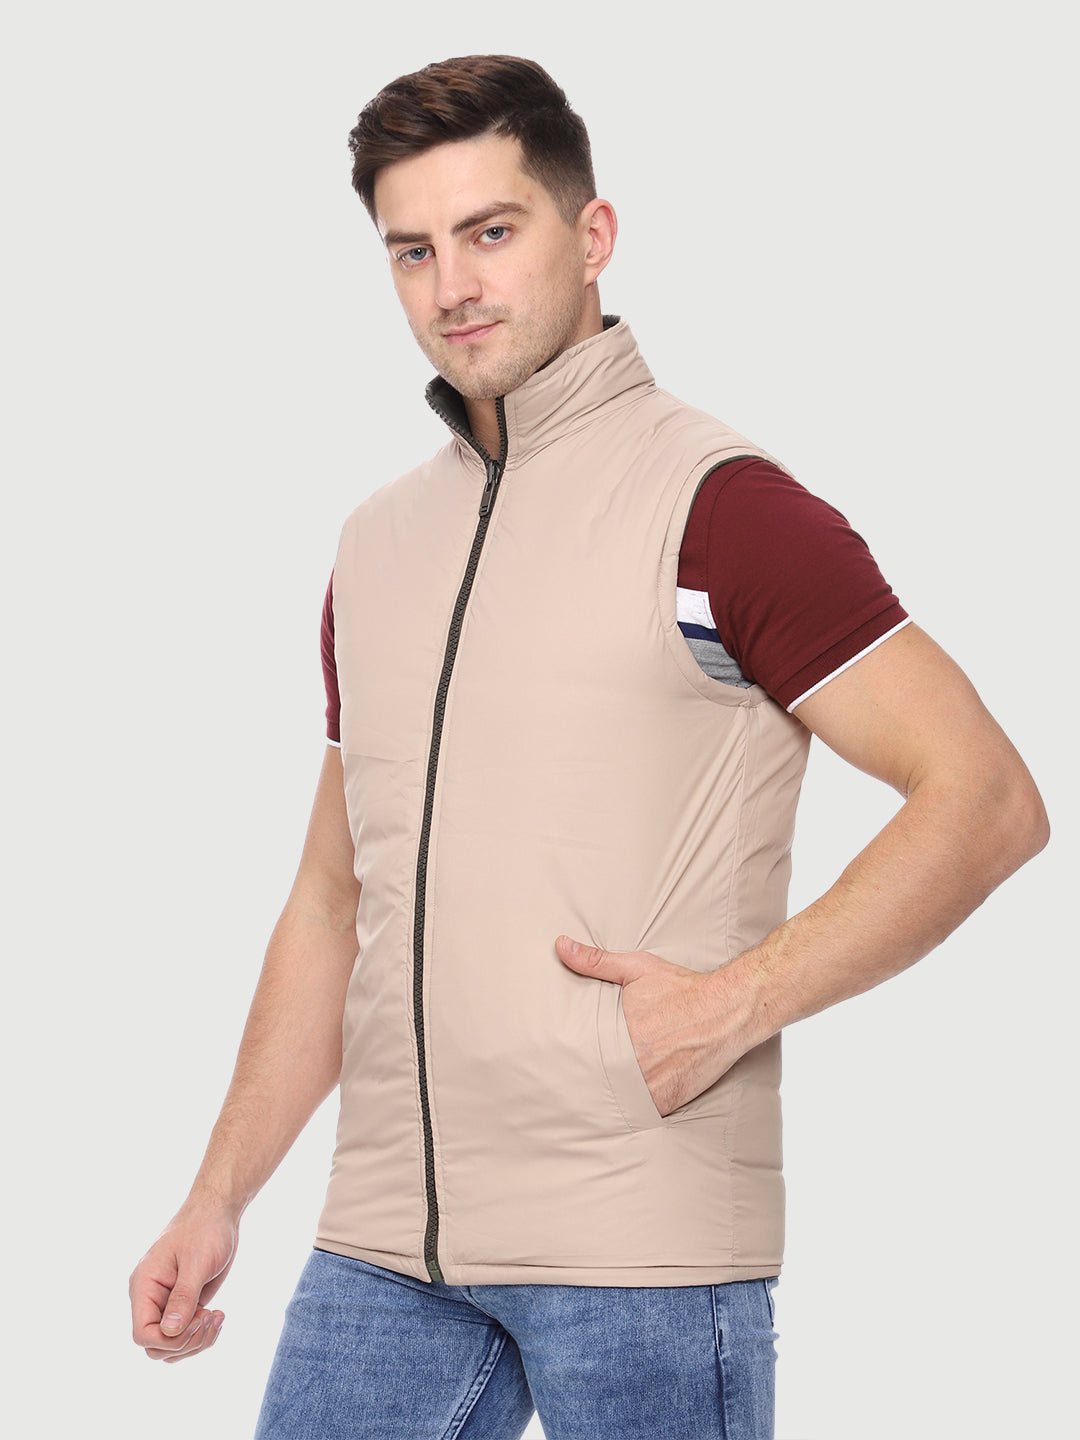 Sleeveless Reversible Jacket For Men